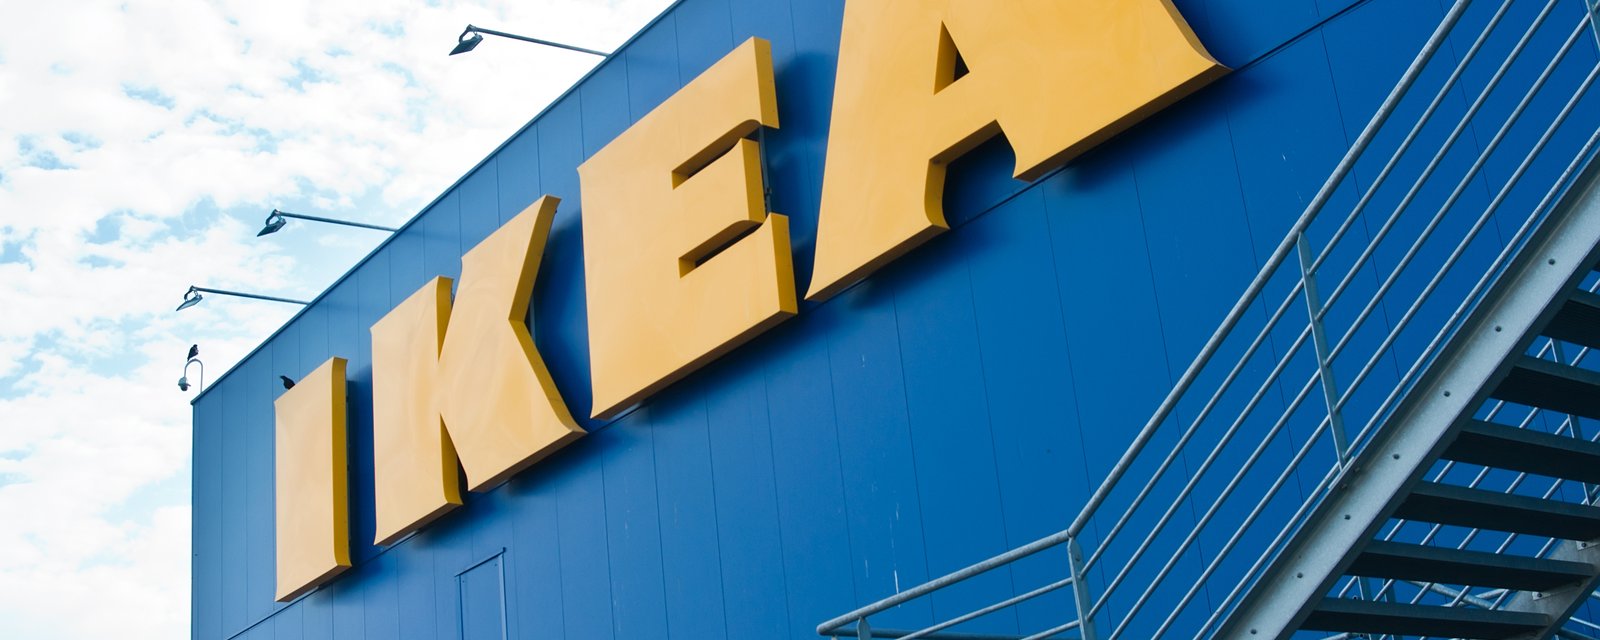 Plusieurs produits très populaires de chez IKEA font l'objet d'un important rappel